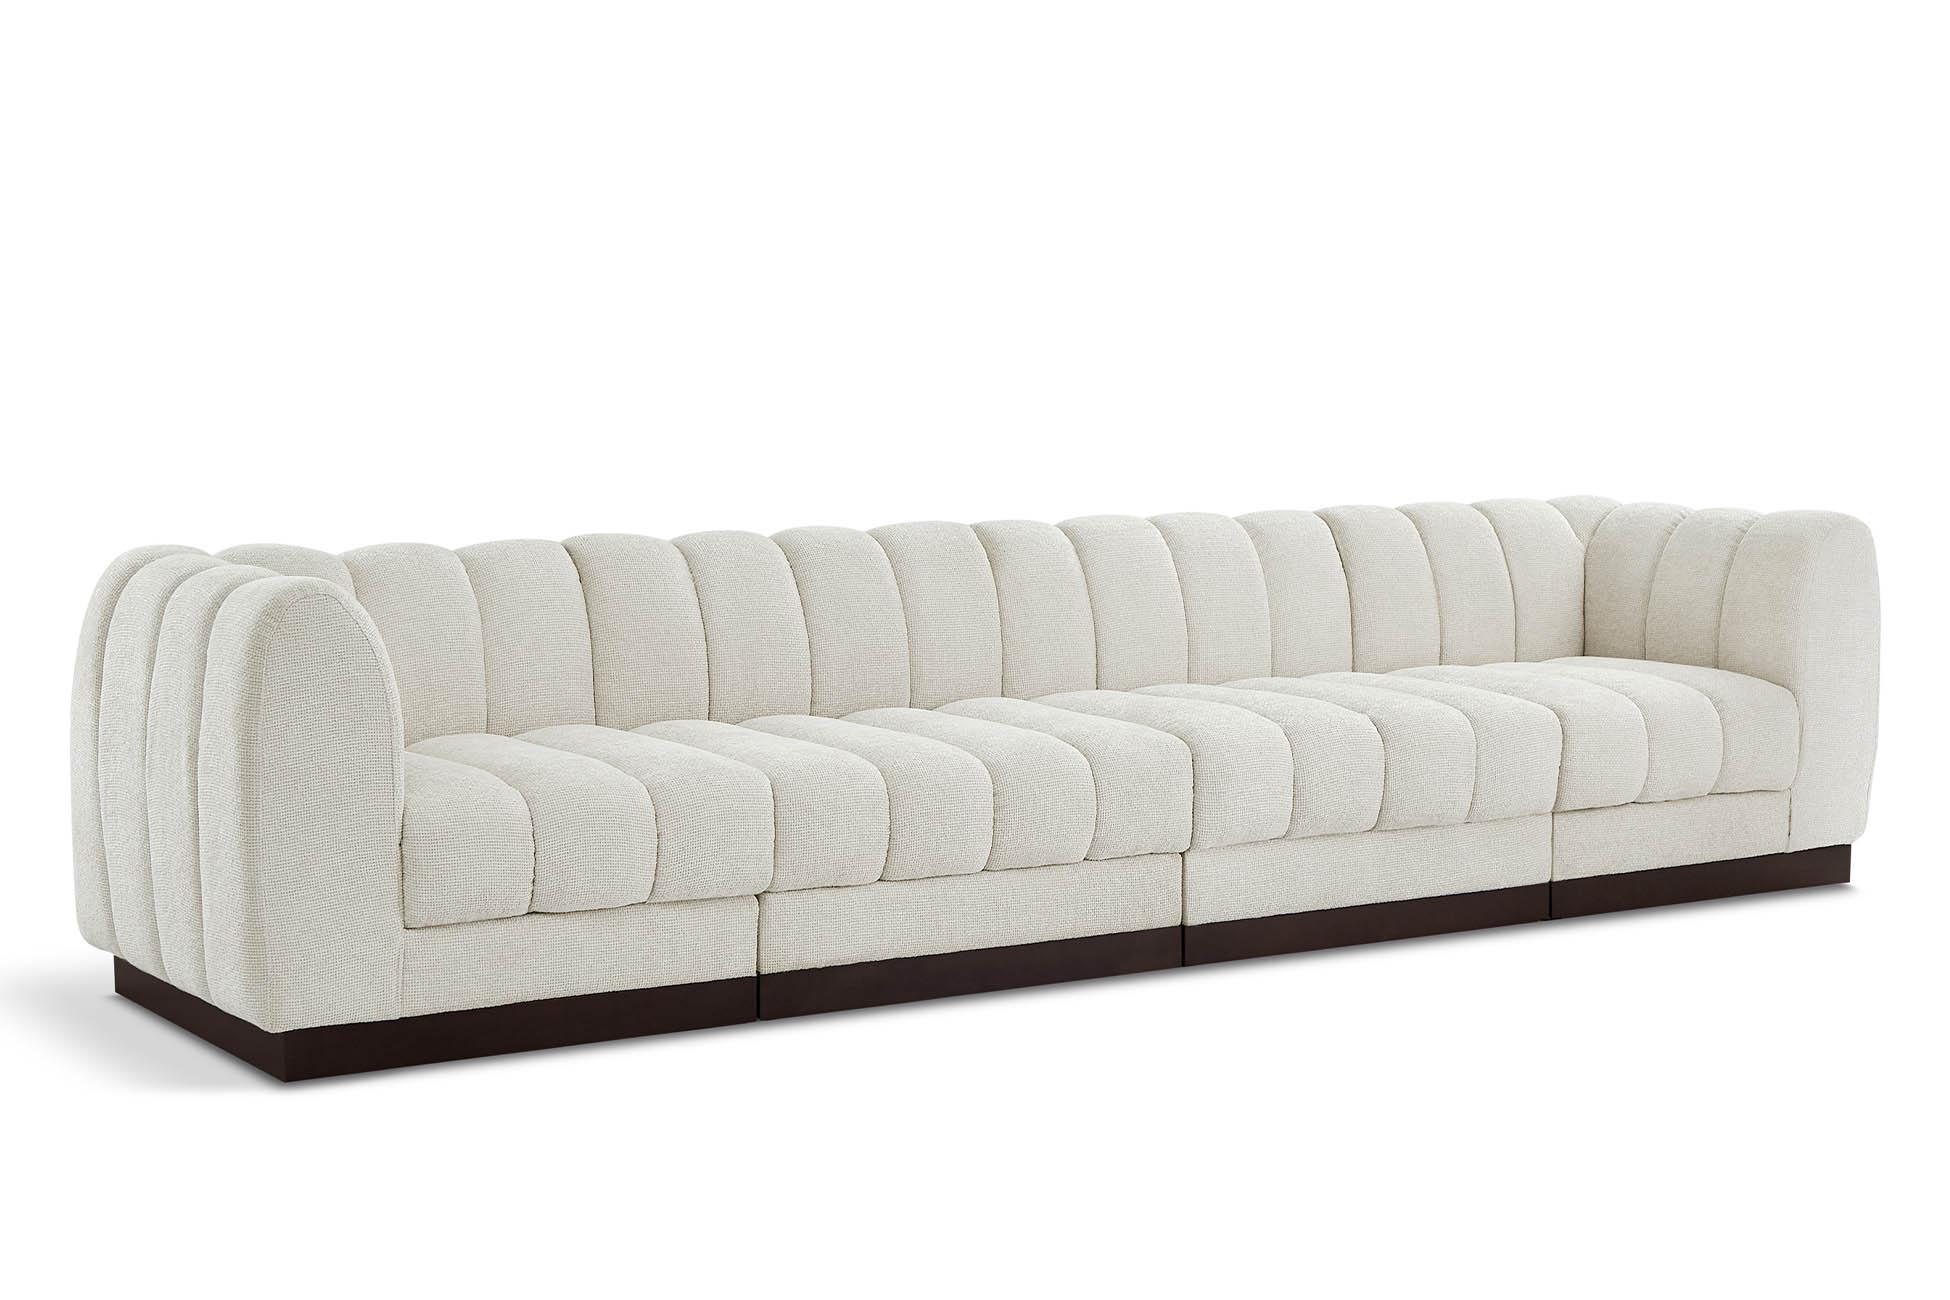 Contemporary, Modern Modular Sofa QUINN 124Cream-S133 124Cream-S133 in Cream Chenille